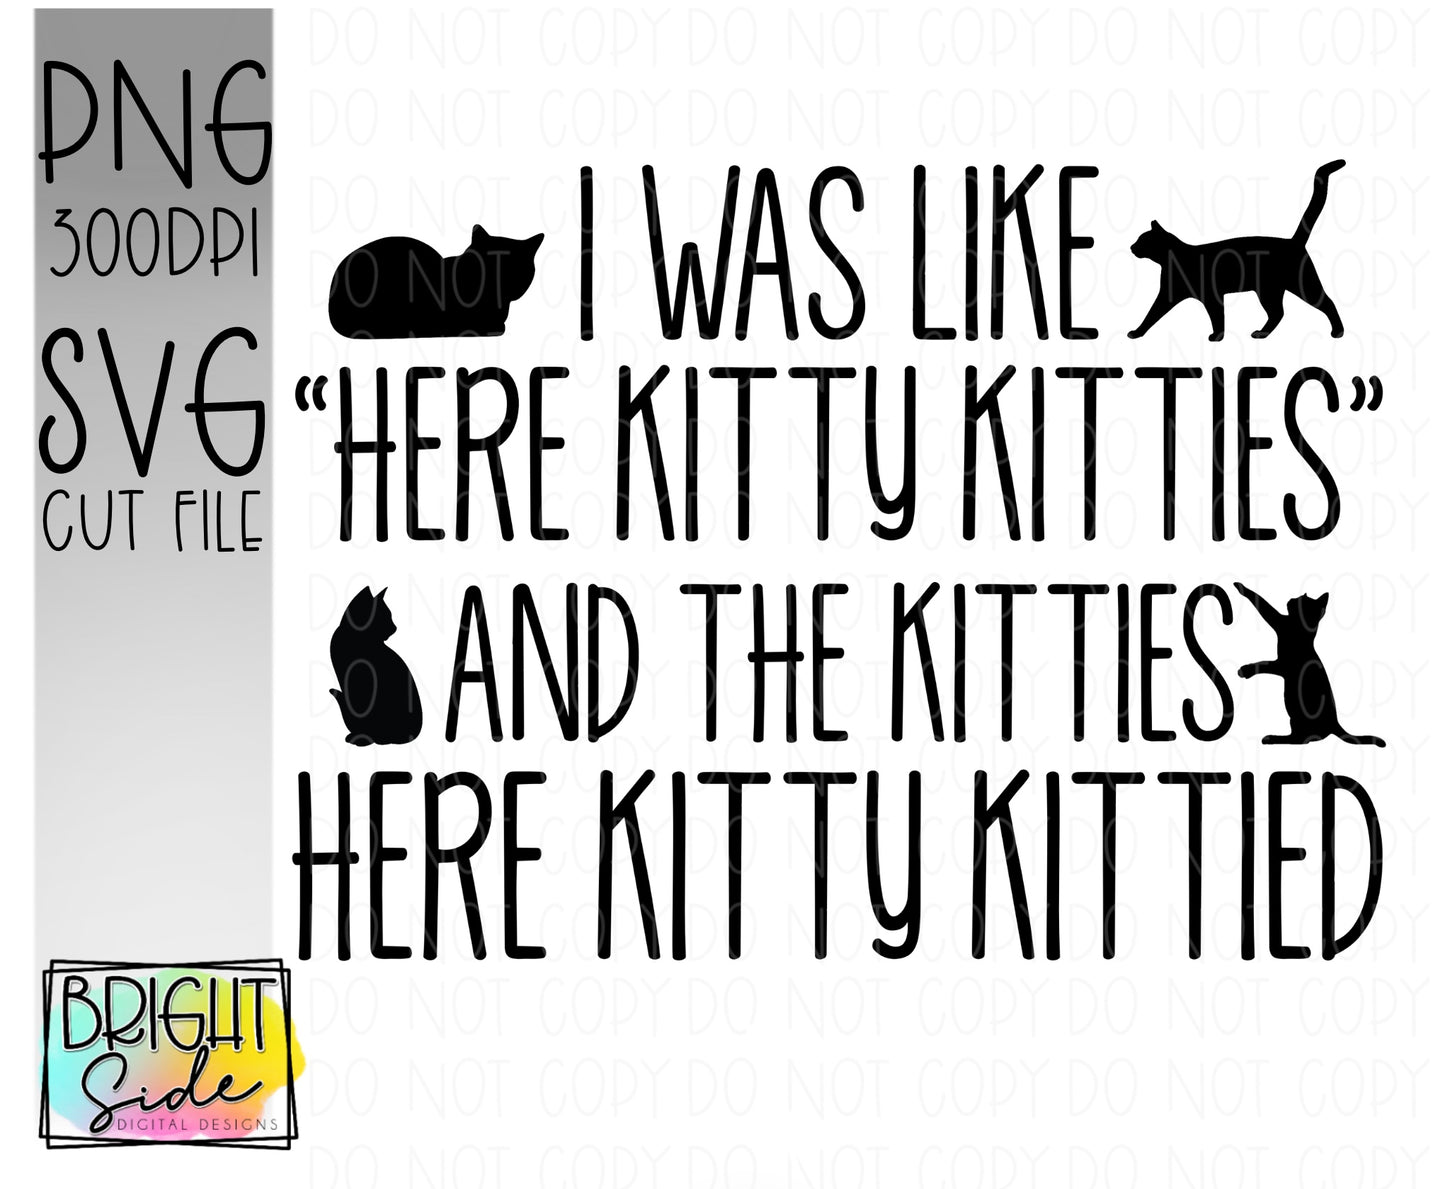 Kitties Kittied